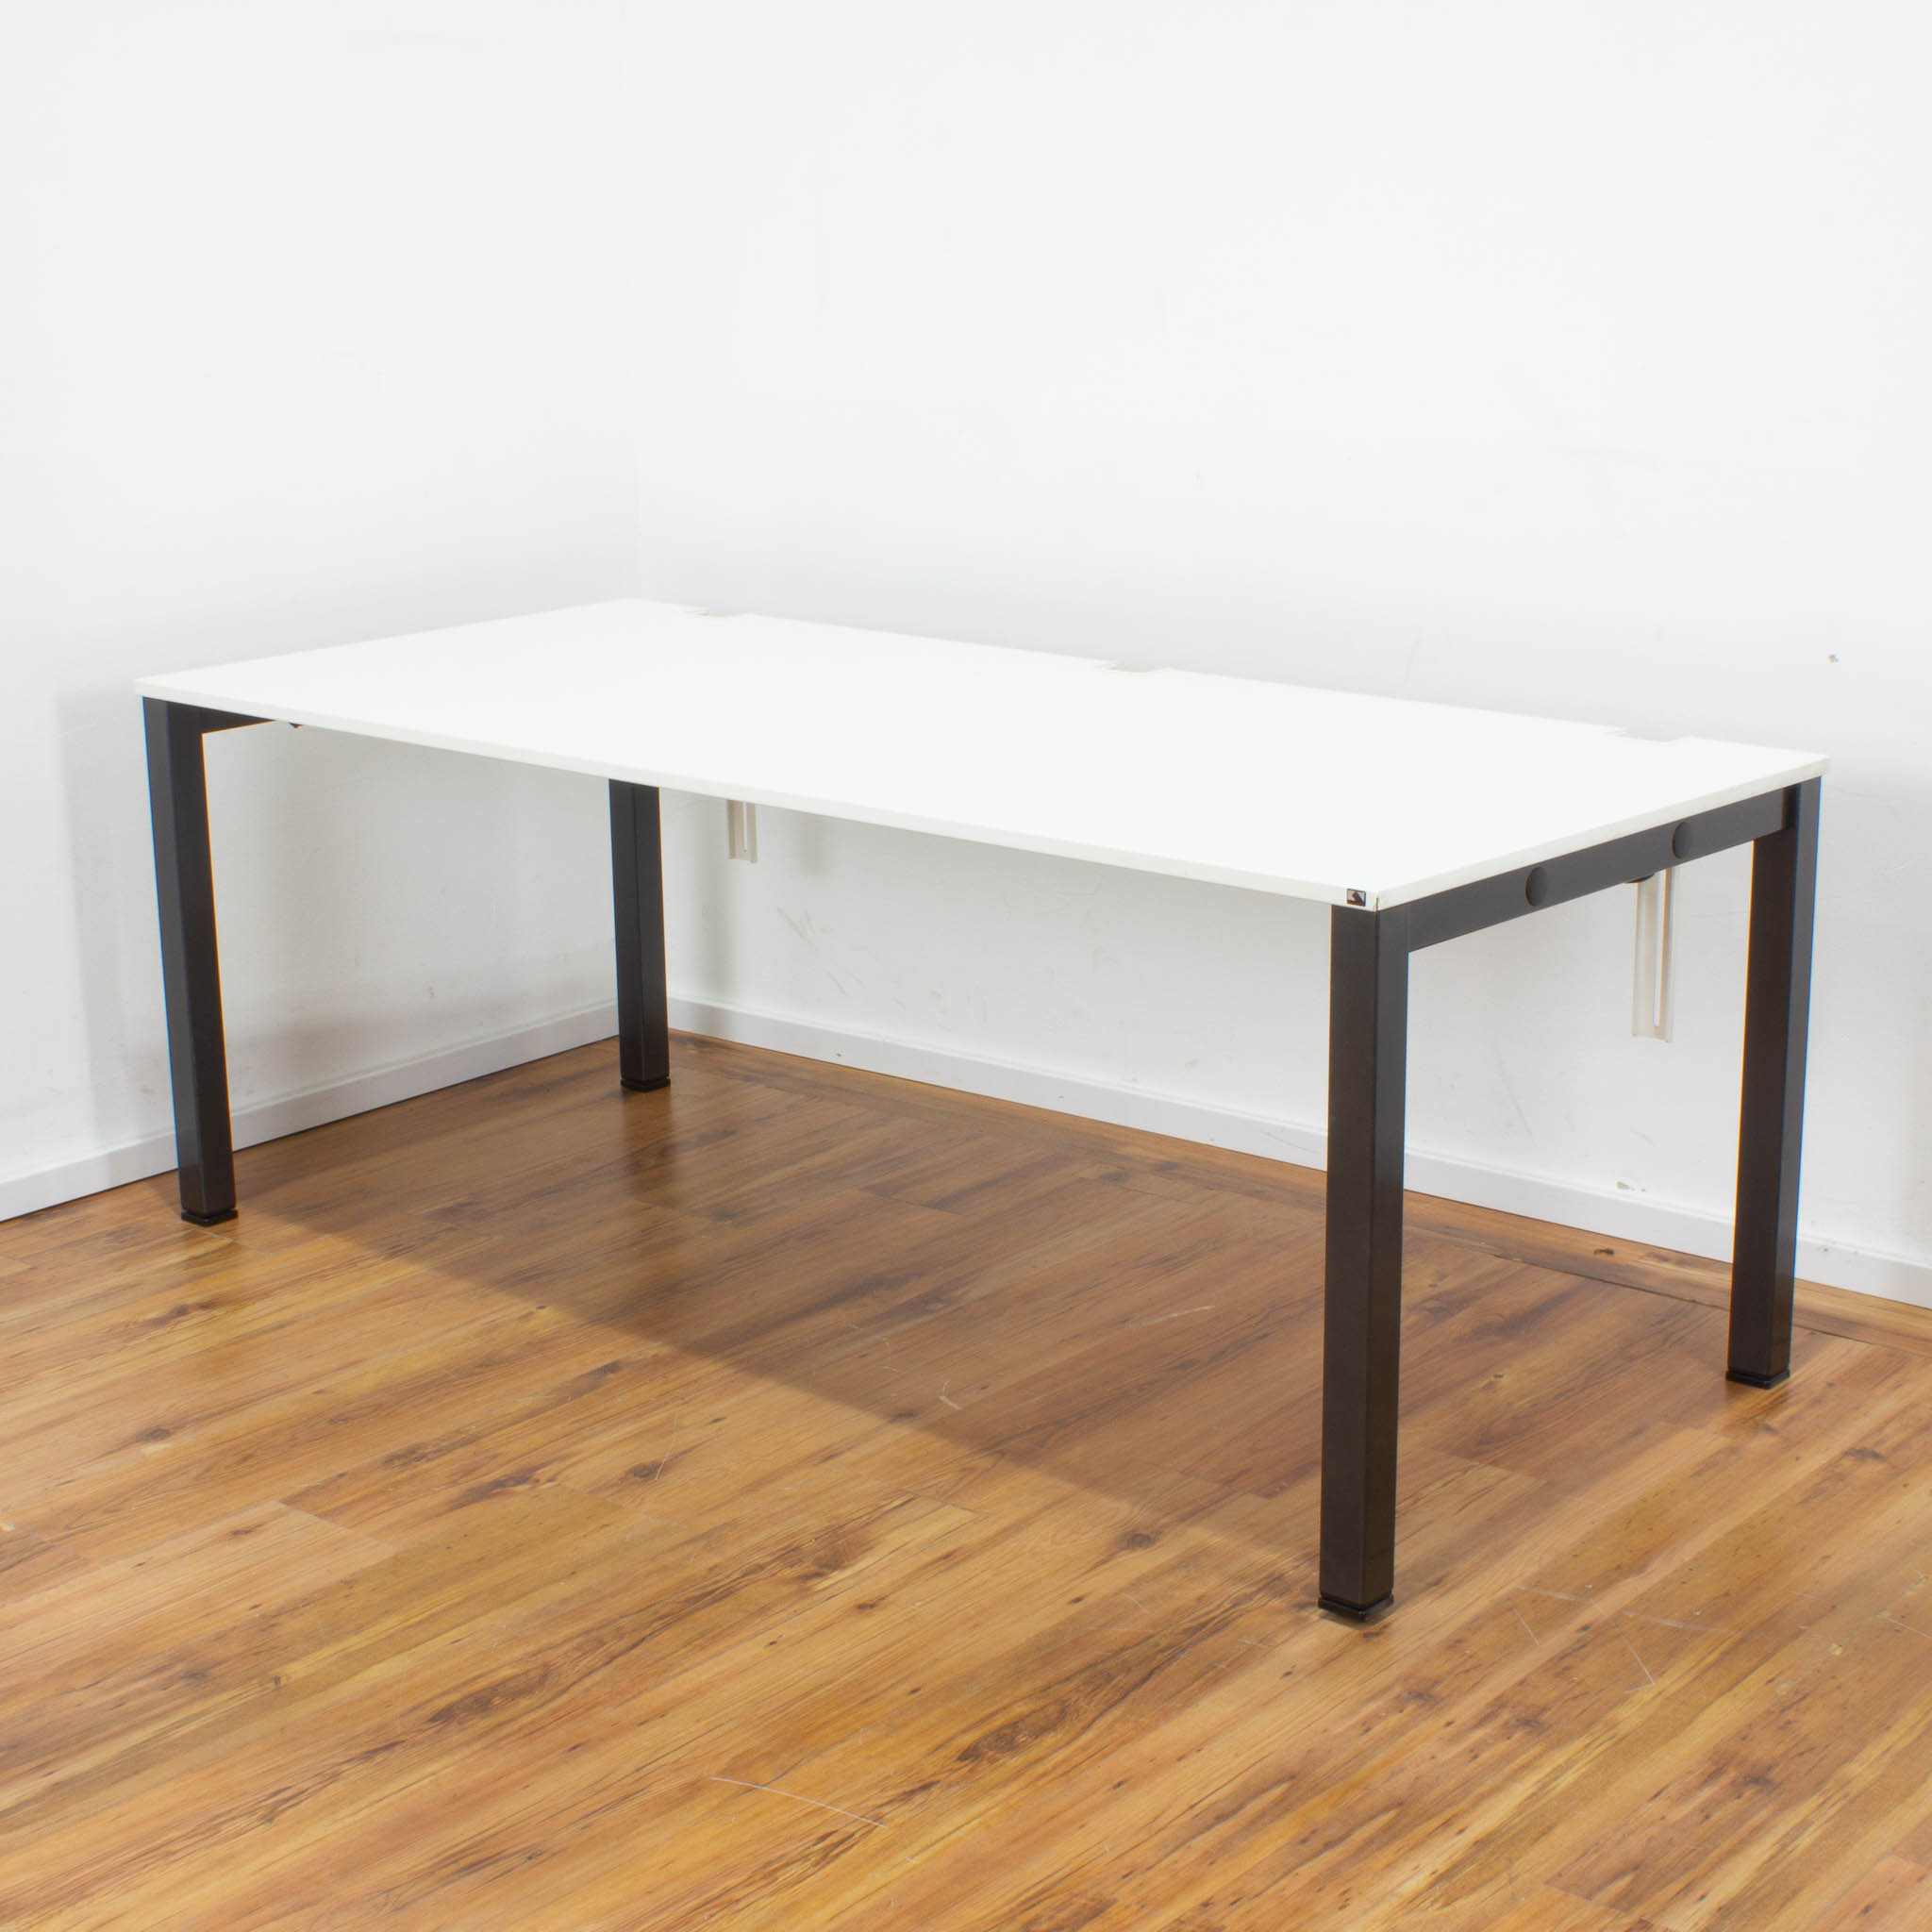 König + Neurath Schreibtisch - 160 x 80 cm - Platte weiß